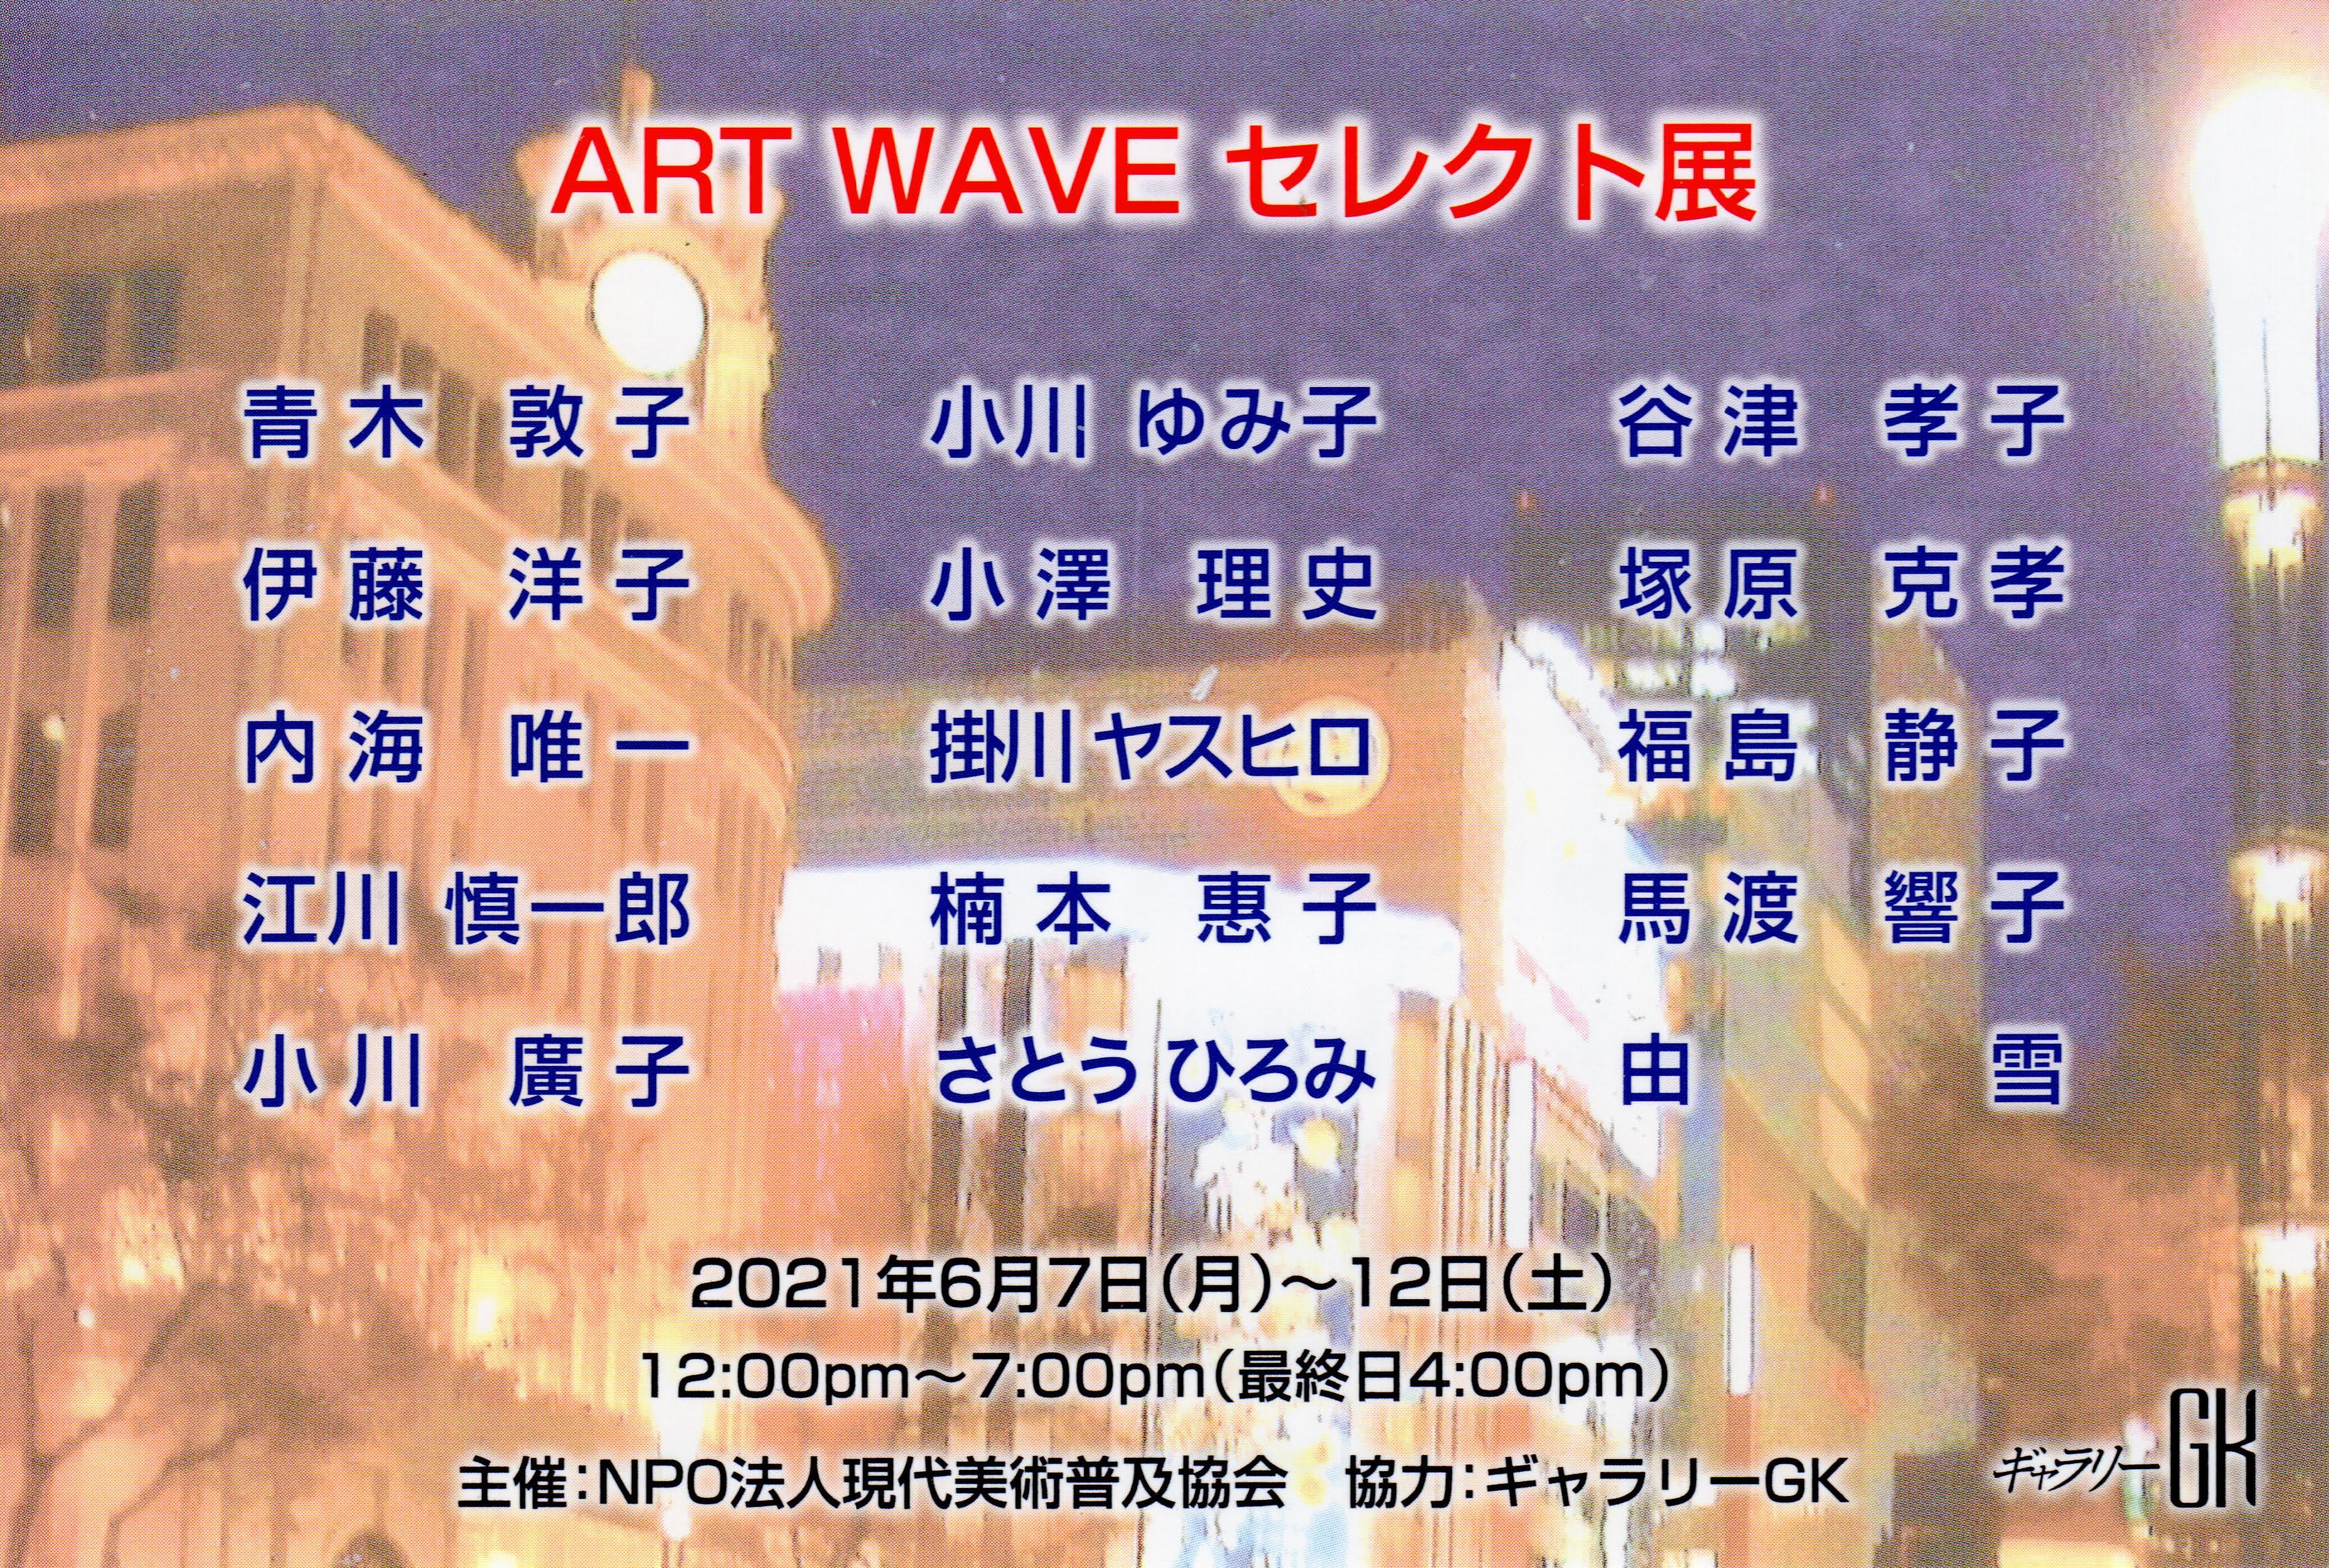 「ART WAVE セレクト展」。伊藤 洋子 も出品。ギャラリーGK にて。(2021/06/07 Mon - 2021/06/12 Sat)